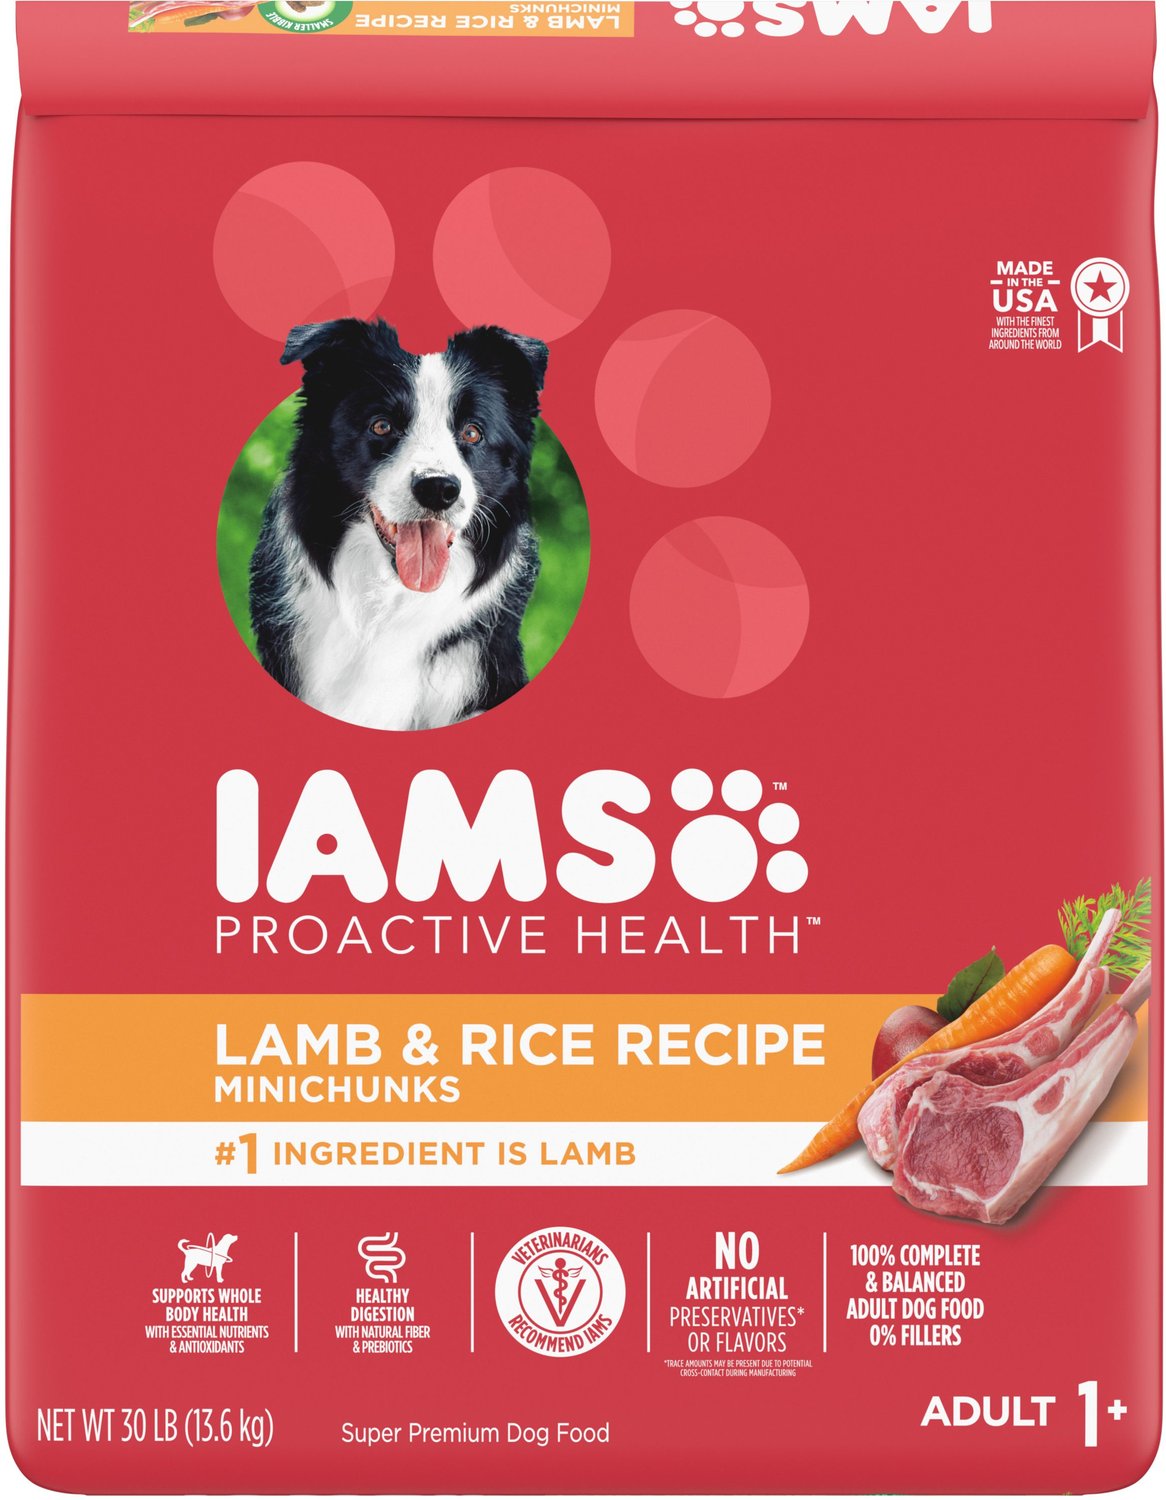 dog food similar to iams